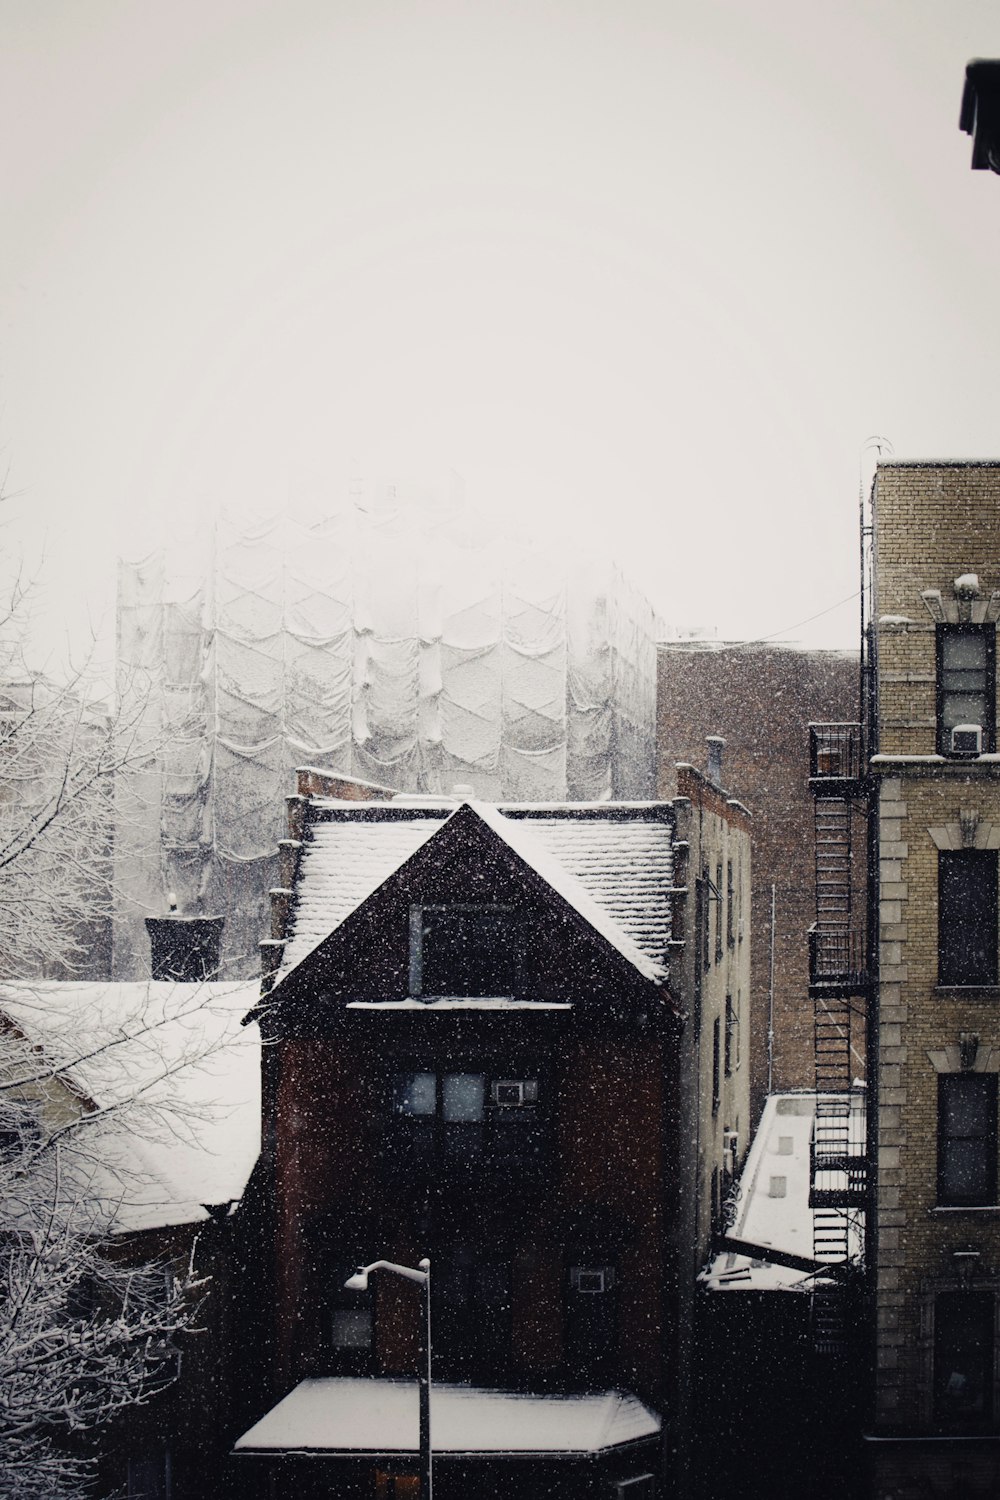 雪景色のビル群と街灯